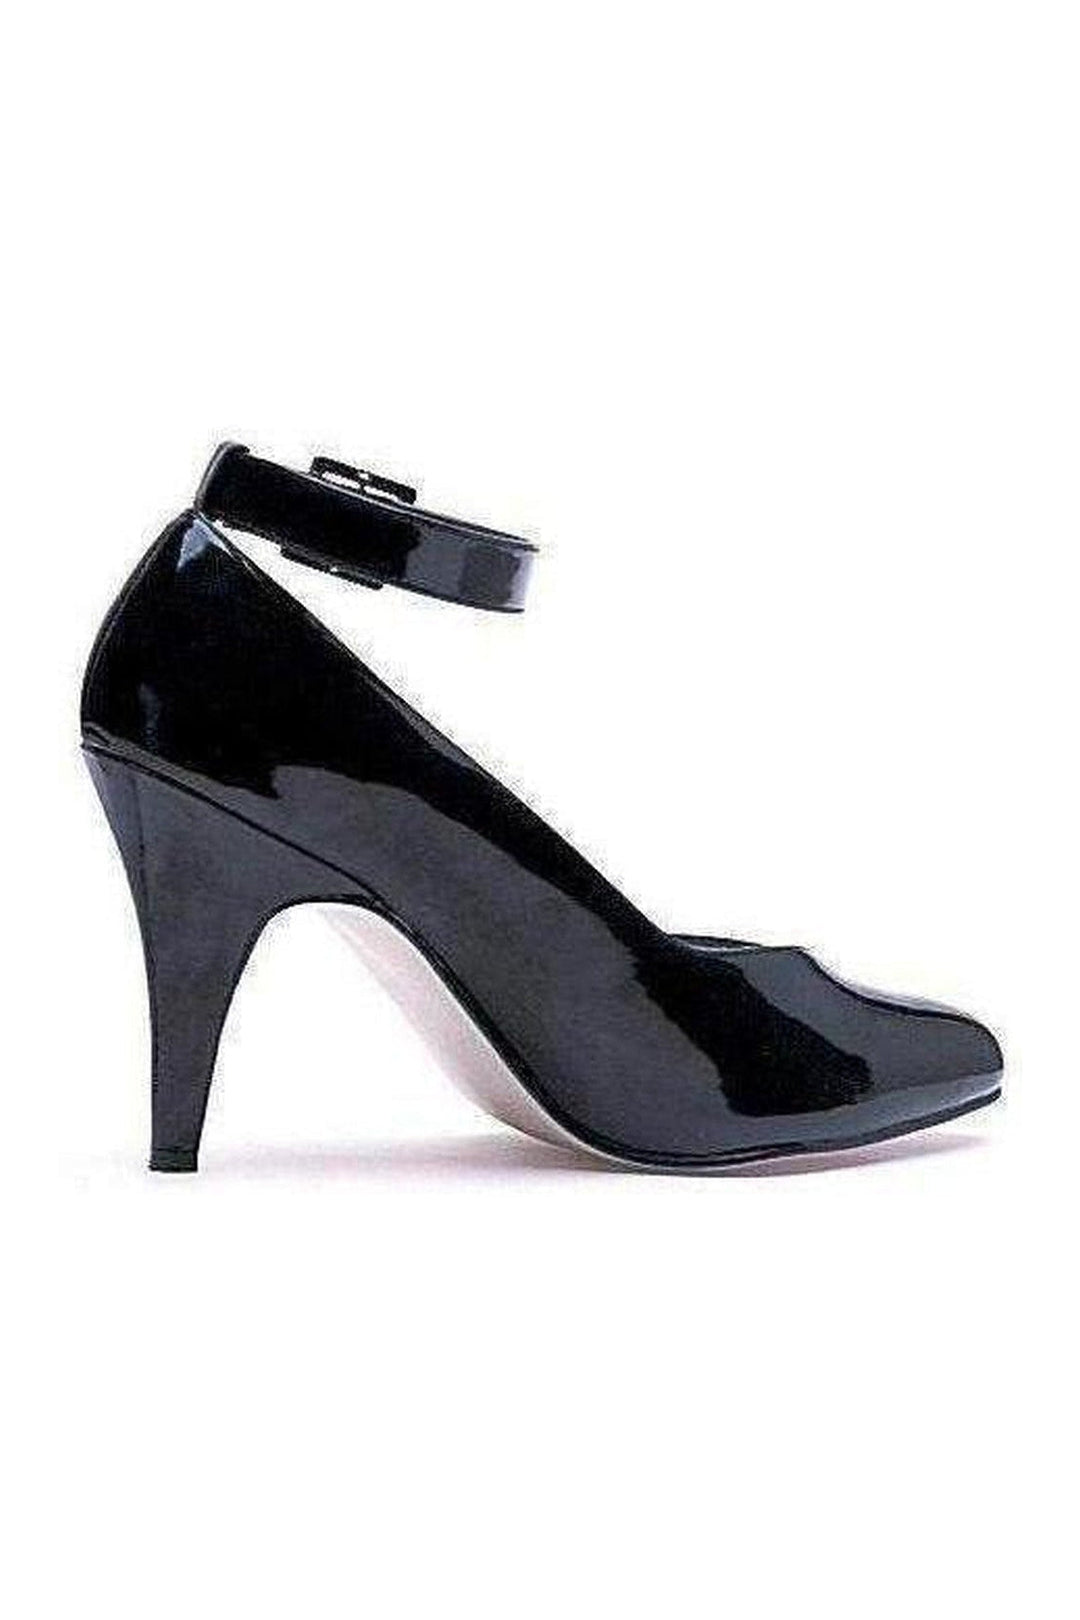 8241-D Pump | Black Patent-Ellie Shoes-SEXYSHOES.COM